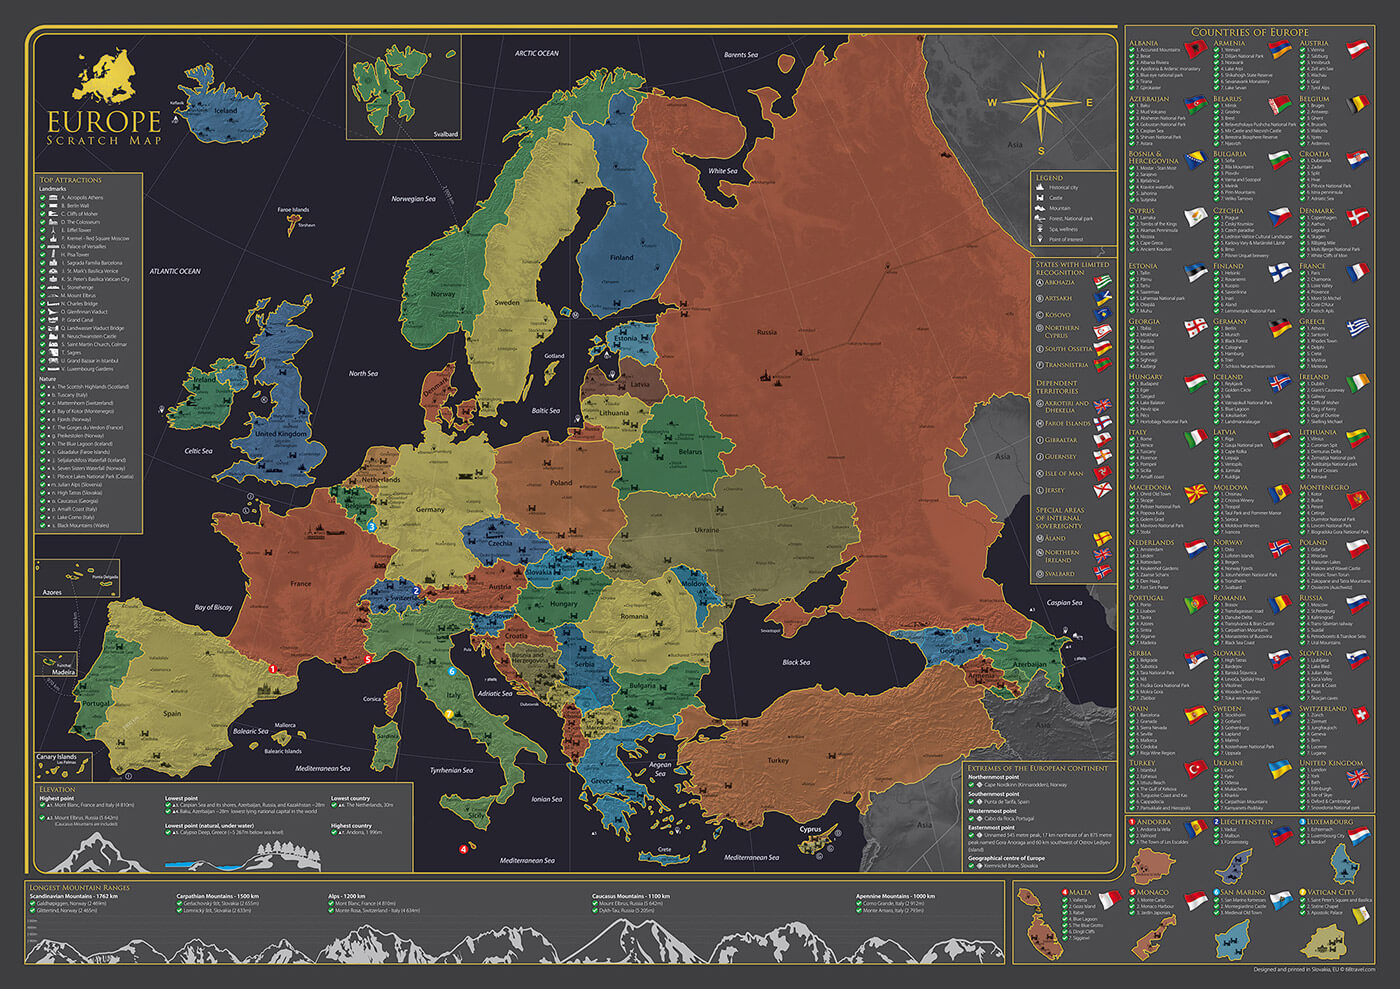 Nástenná mapa Európy - poster bez stieracej fólie